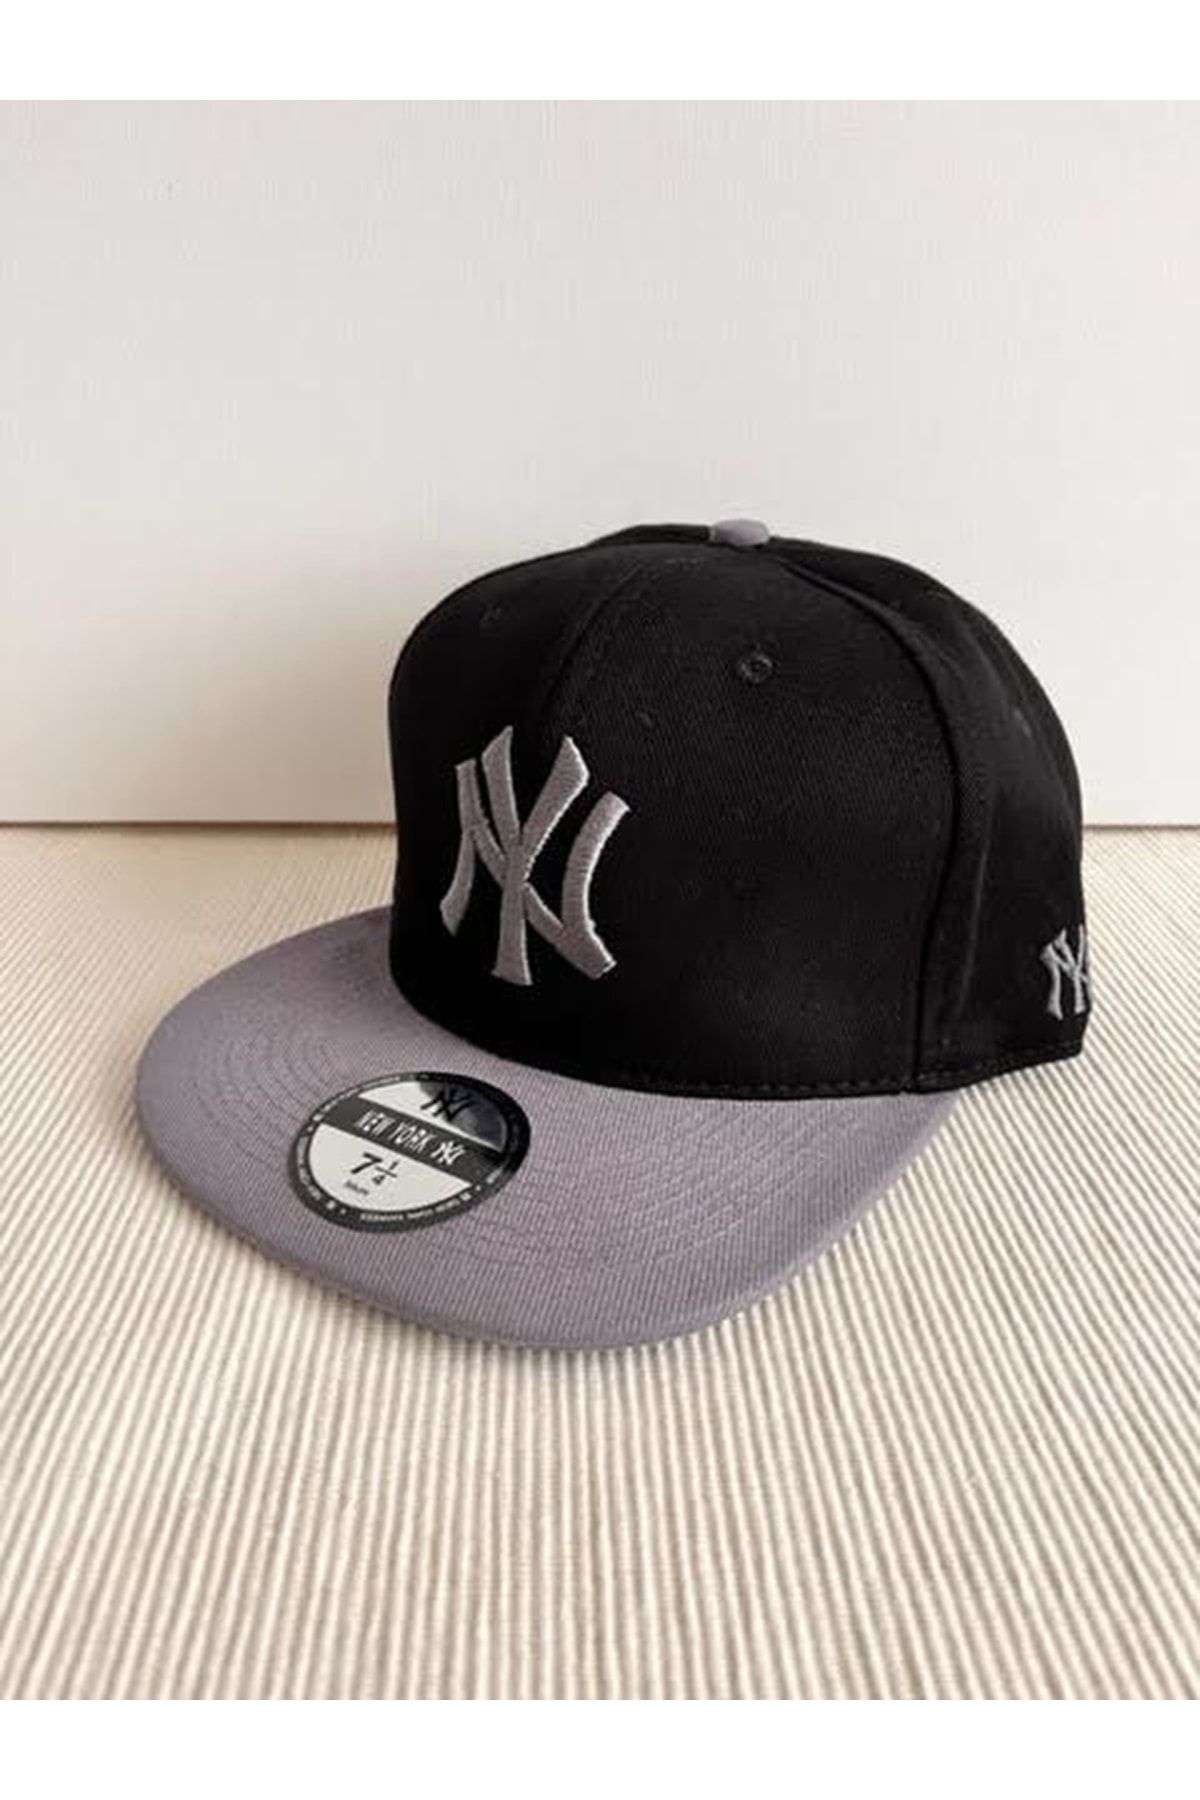 CosmoOutlet NY New York Logolu Arkasından Ayarlamalı Unisex Füme Siyah Hip Hop Şapka